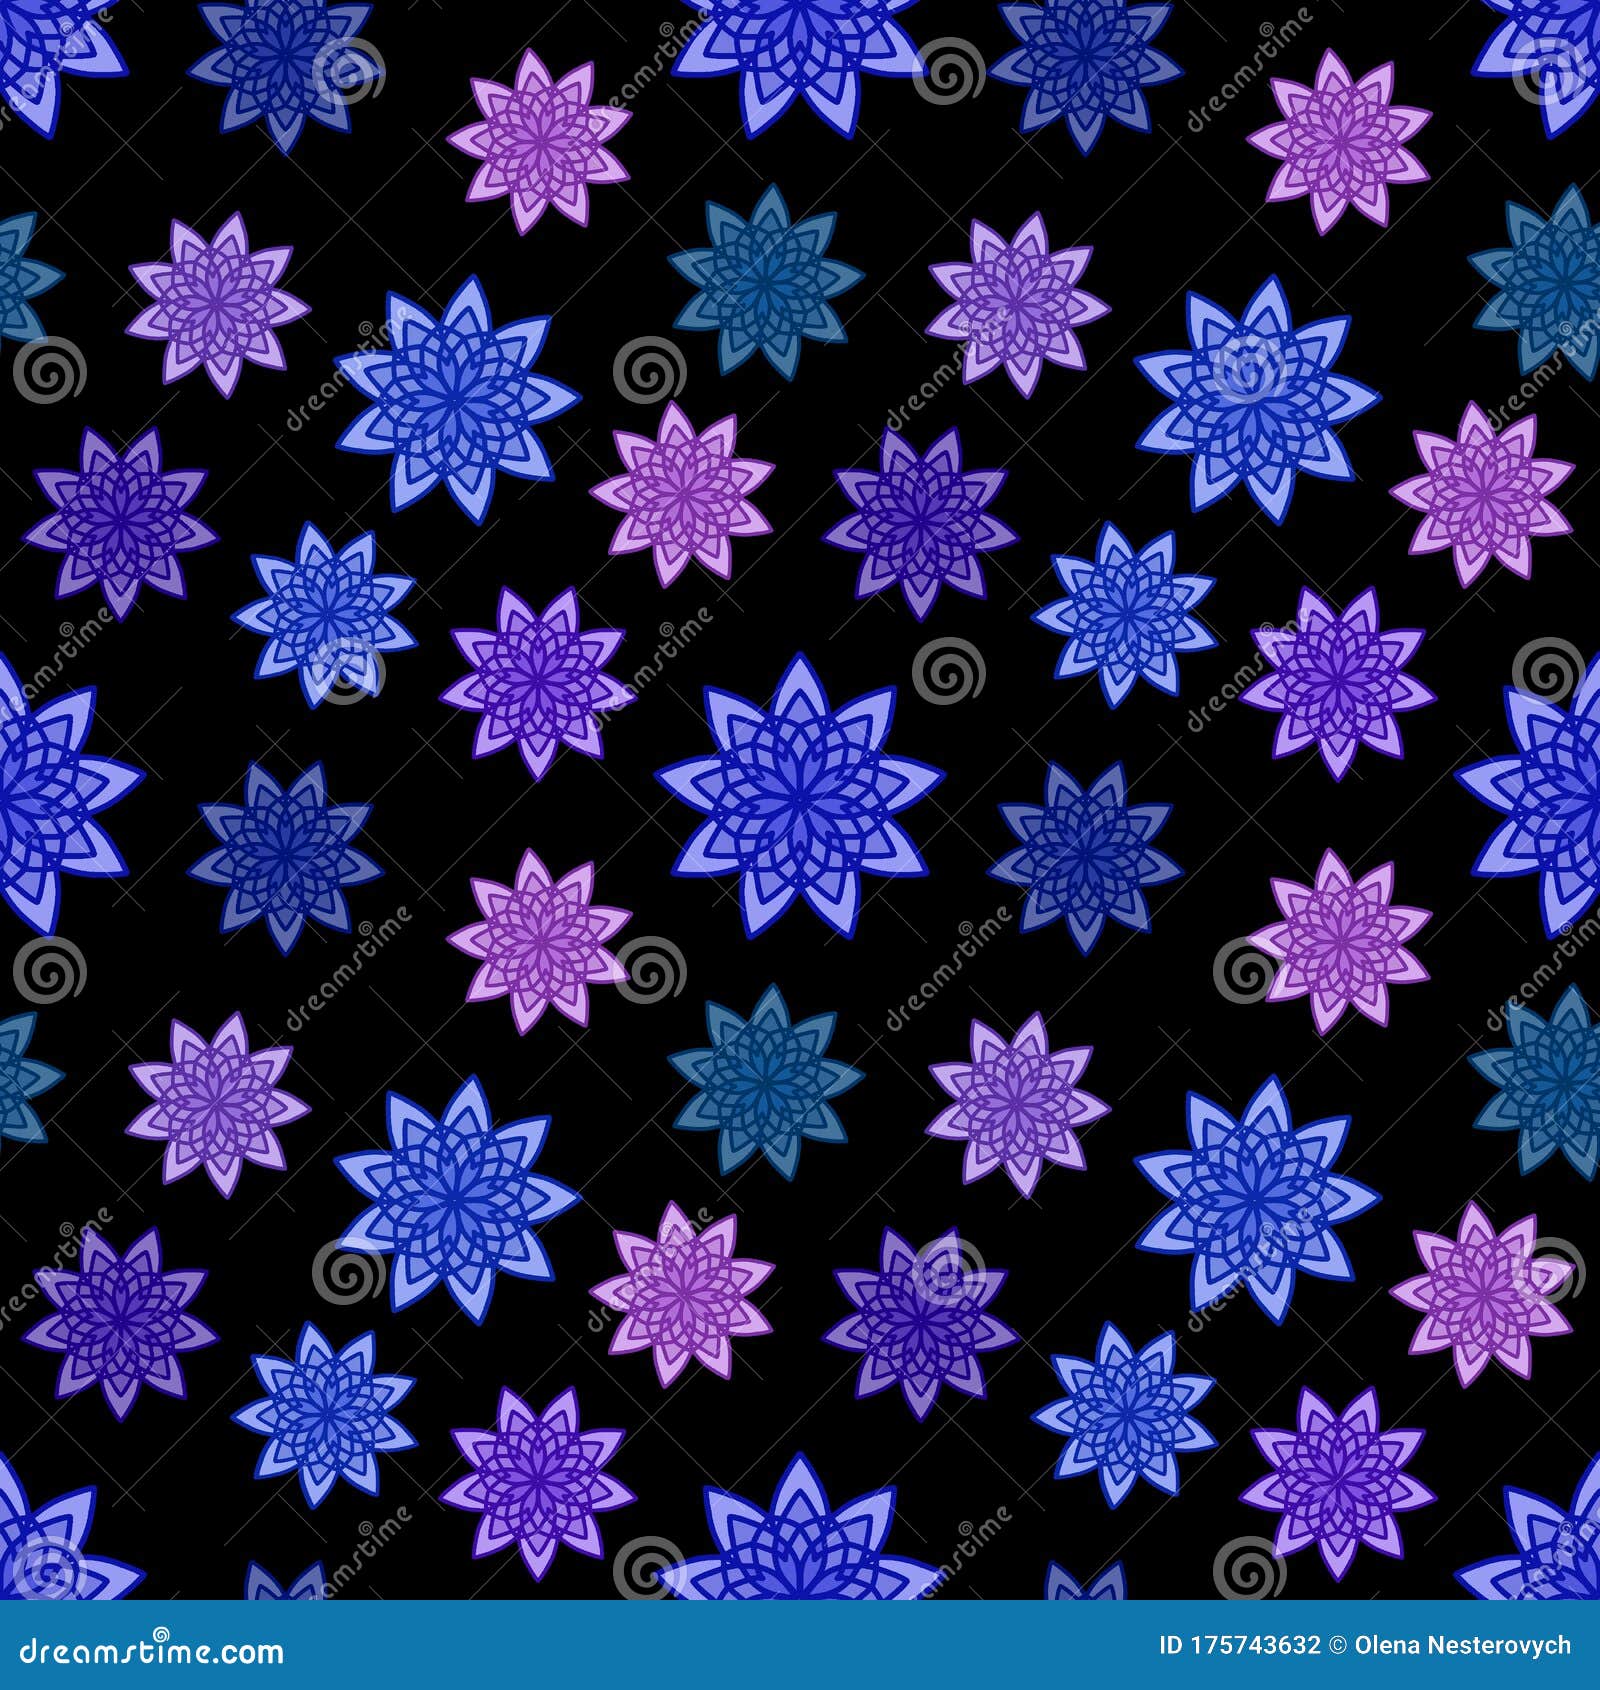 蓝色 紫色和紫丁香花饰与黑色背景的无缝图案厨房壁纸或浴室的花纹库存例证 插画包括有厨房壁纸或浴室的花纹 蓝色 紫色和紫丁香花饰与黑色背景的无缝图案